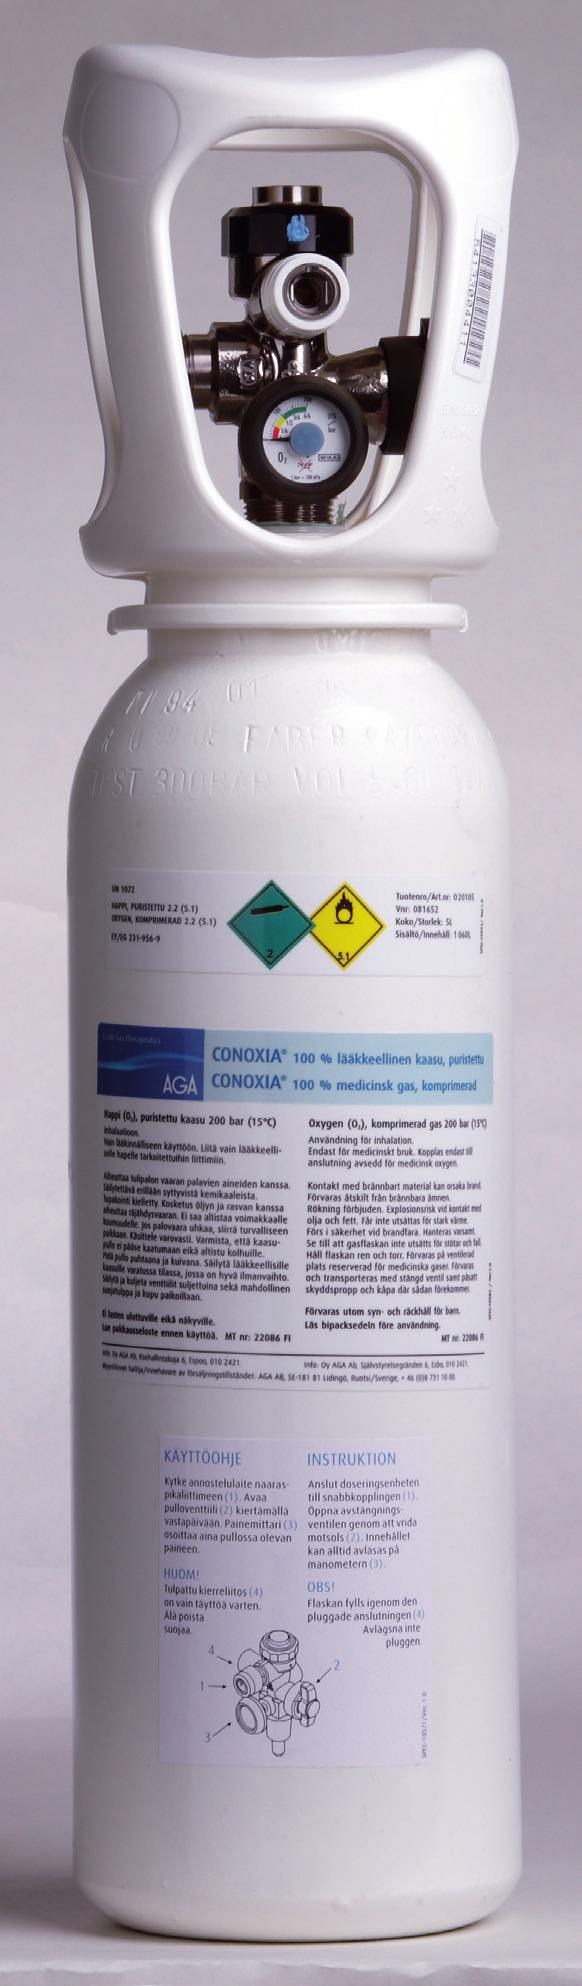 10 CONOXIA, lääkkeellisen hapen käyttöopas CONOXIA happipullo. Viivakoodin avulla jokainen kaasupullo voidaan yksilöidä ja jäljittää tarvittaessa (esim. tuote takaisinvetojen yhteydessä).